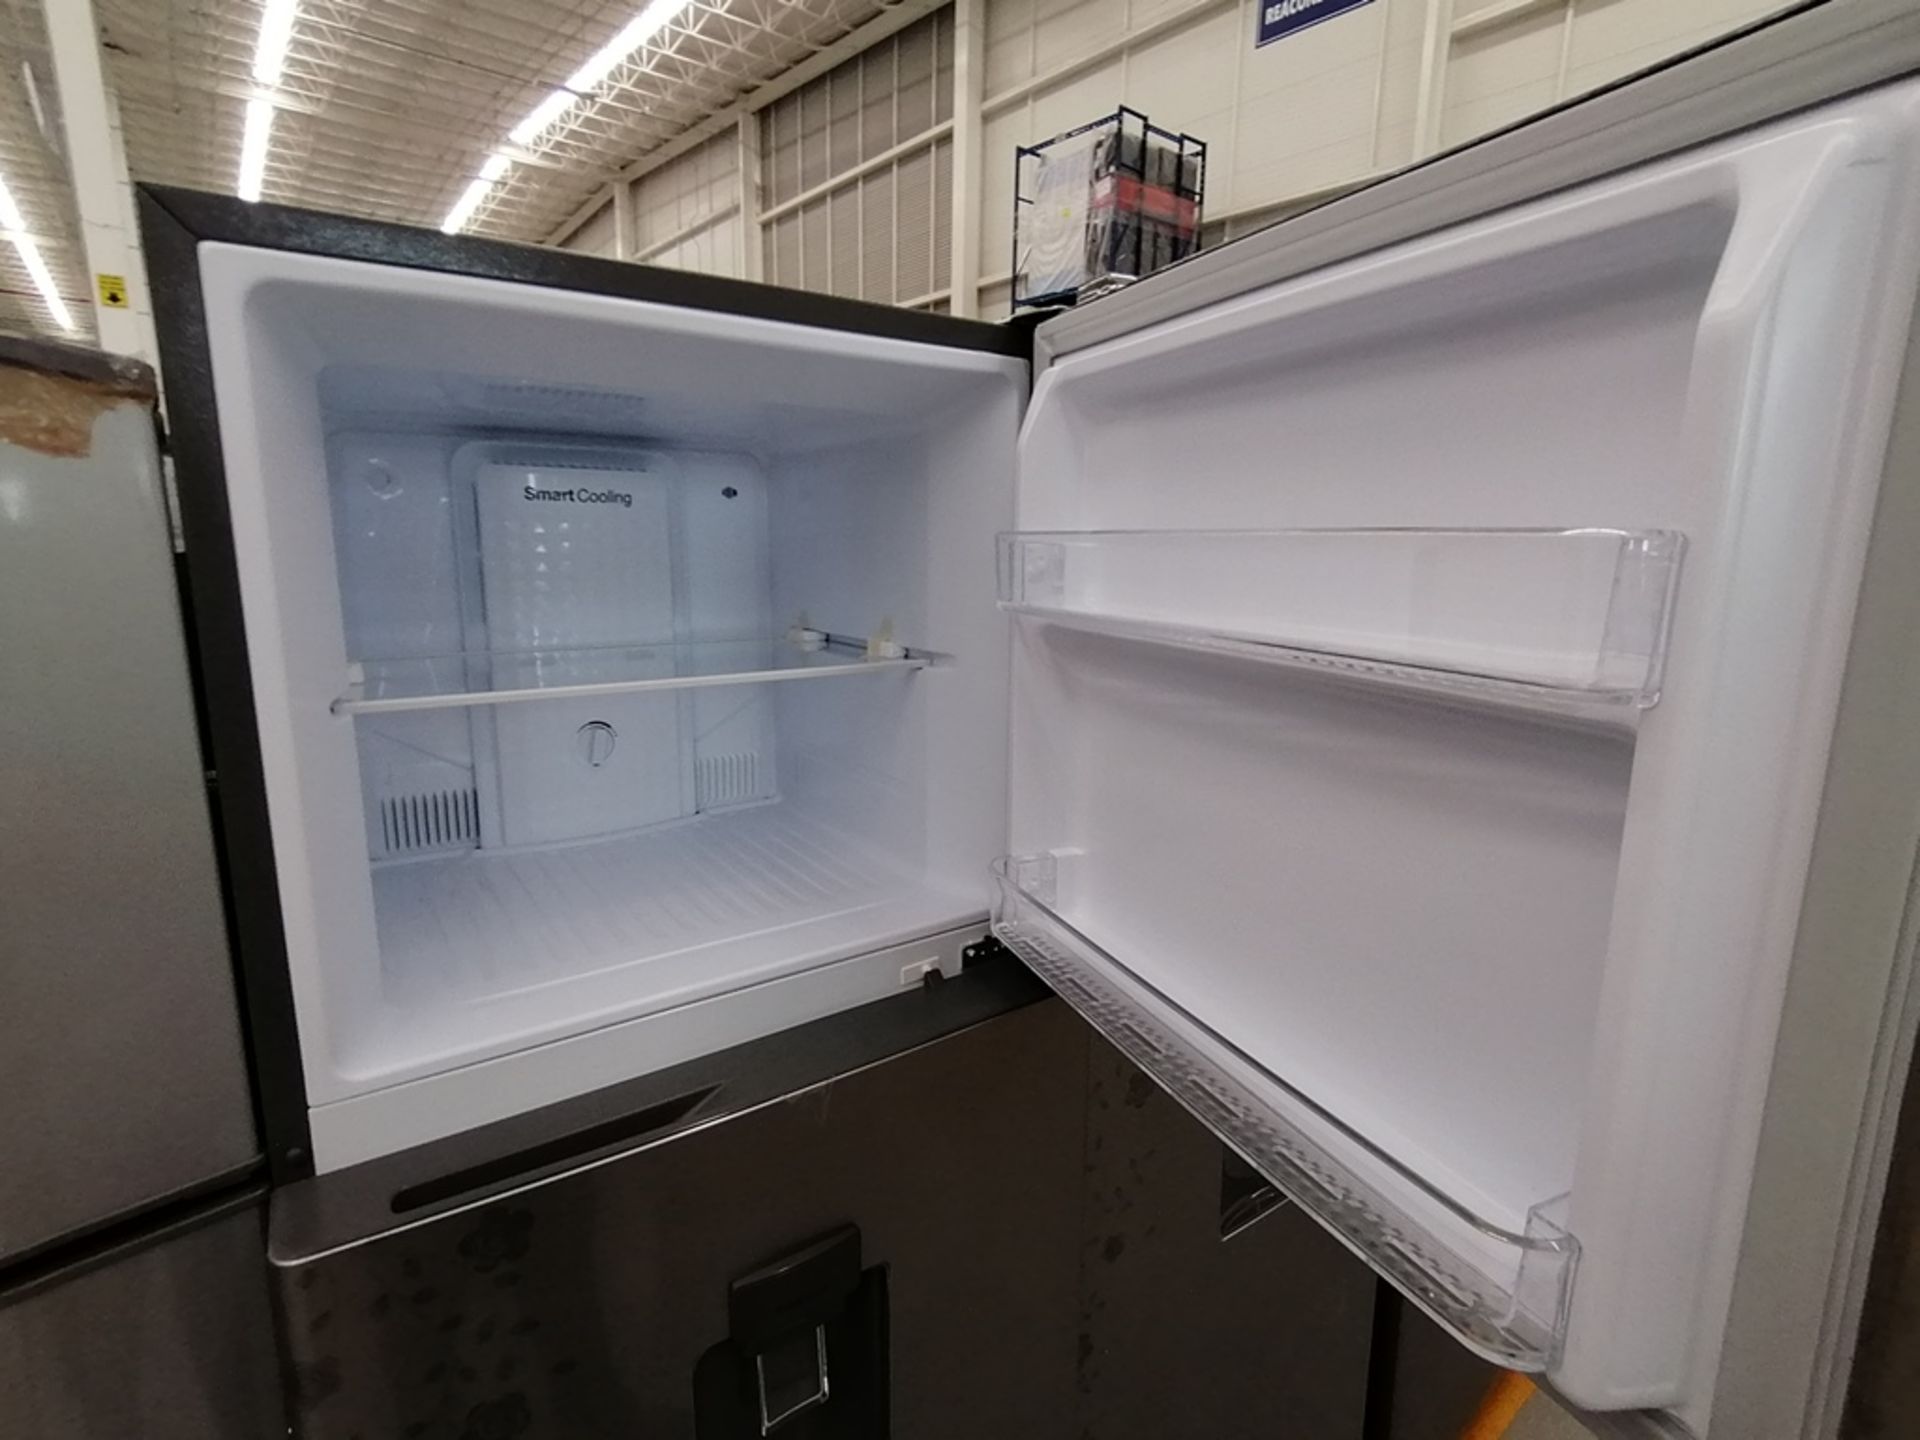 Lote de 2 Refrigeradores, Incluye: 1 Refrigerador con dispensador de agua, Marca Winia, Modelo DFR4 - Image 14 of 16